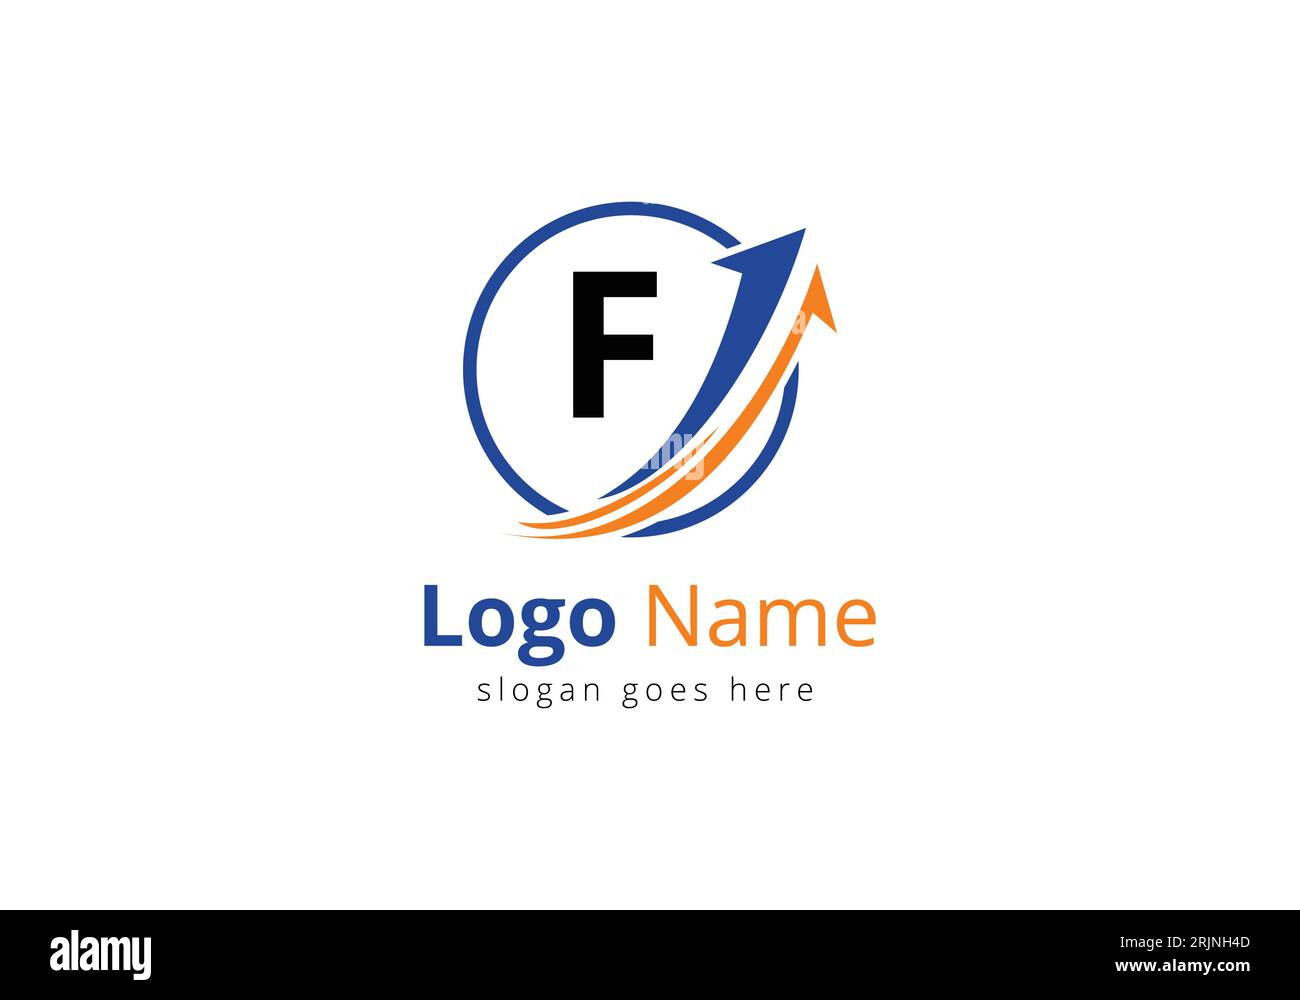 Logo de financement avec concept lettre F. Concept de logo financier ou de réussite. Logo pour l'entreprise comptable et l'identité de l'entreprise Illustration de Vecteur